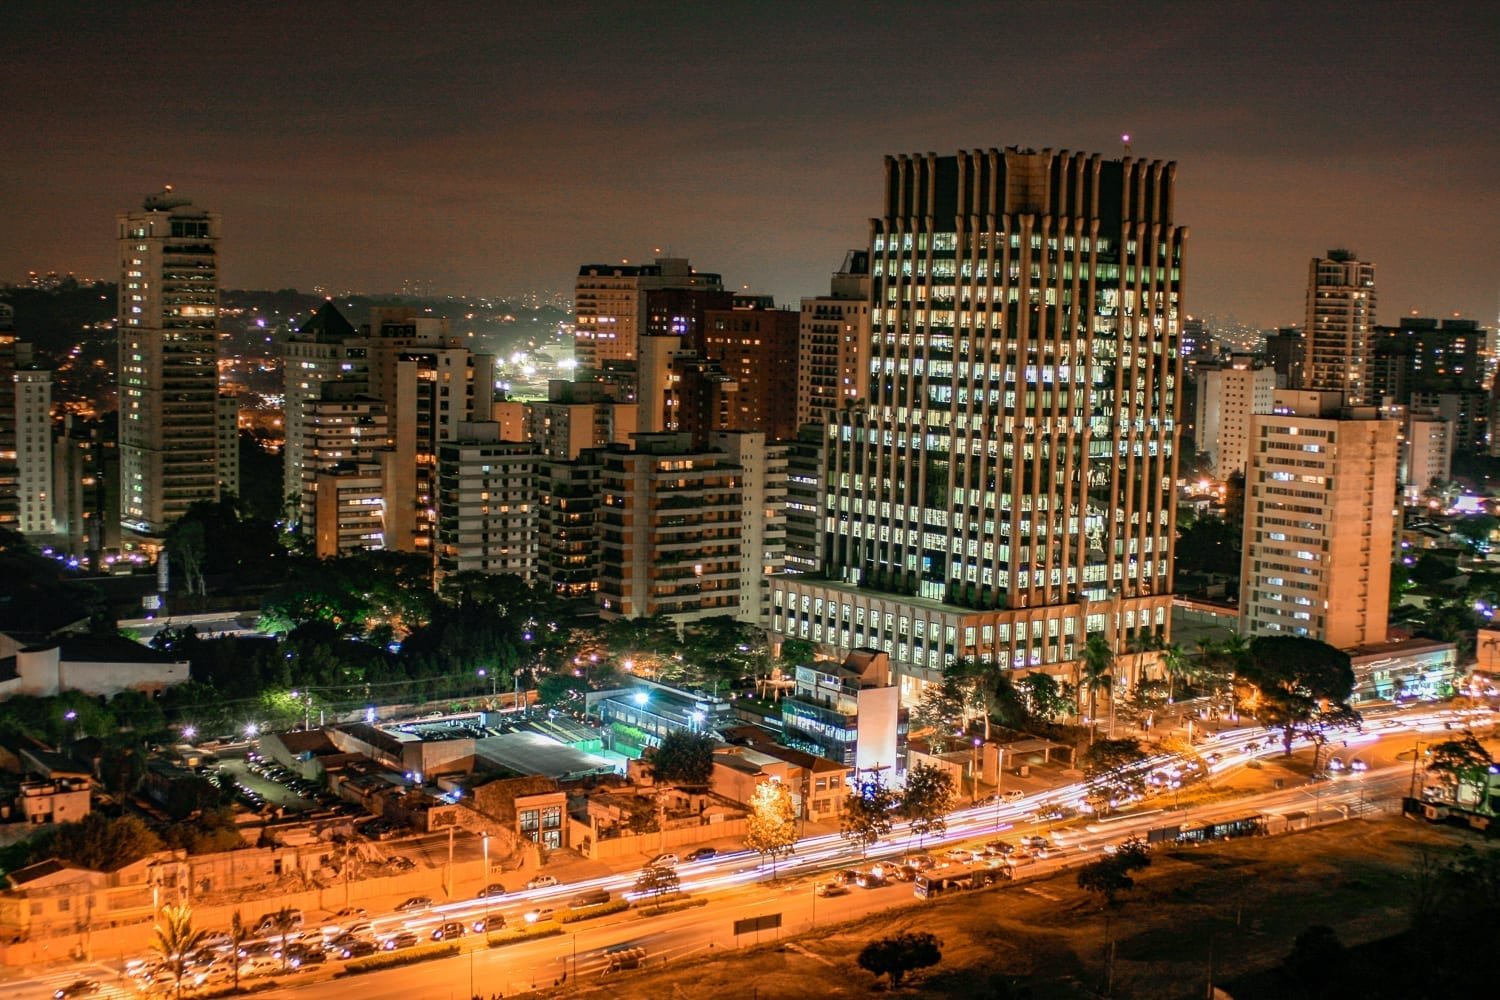 São Paulo Brazil night cityscape